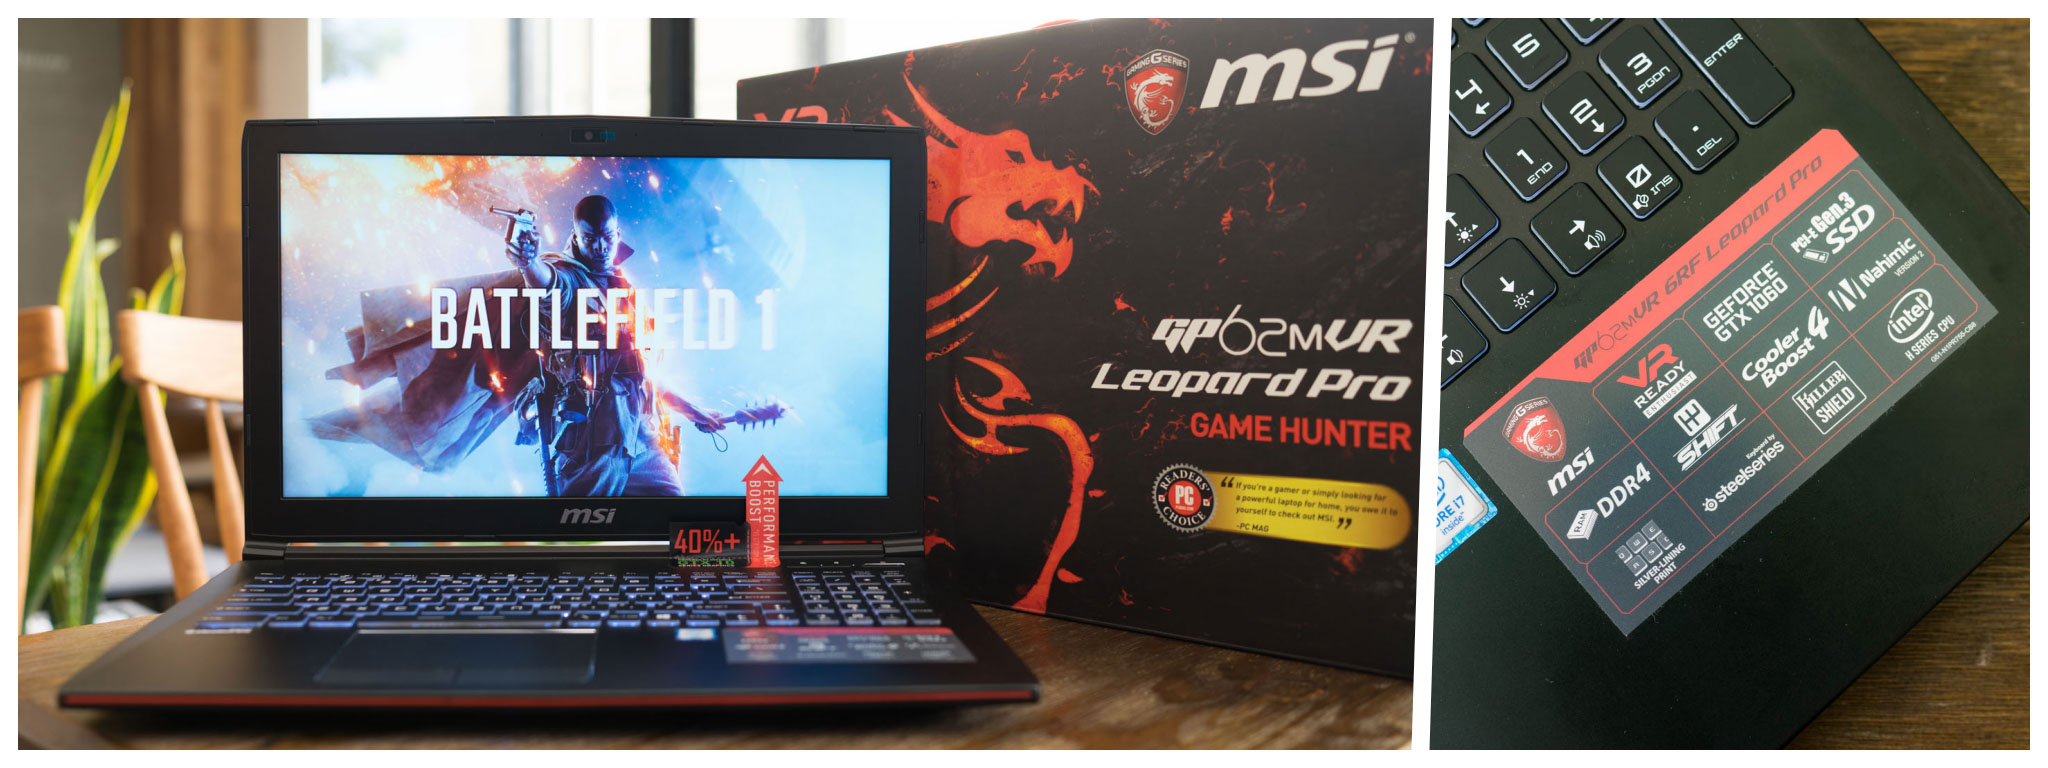 Trên tay laptop chơi game MSI GP62 MVR: Thiết kế ổn, cấu hình tốt trong tầm giá 31 triệu đồng